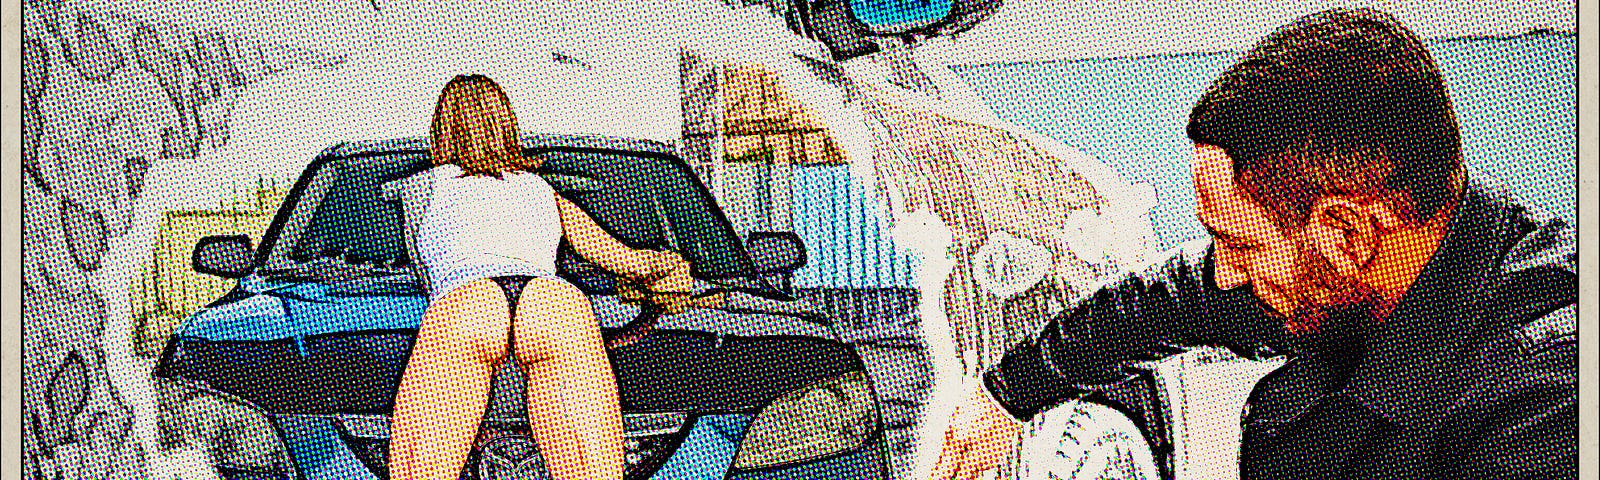 Man washing car fantasizes sexy woman washing car